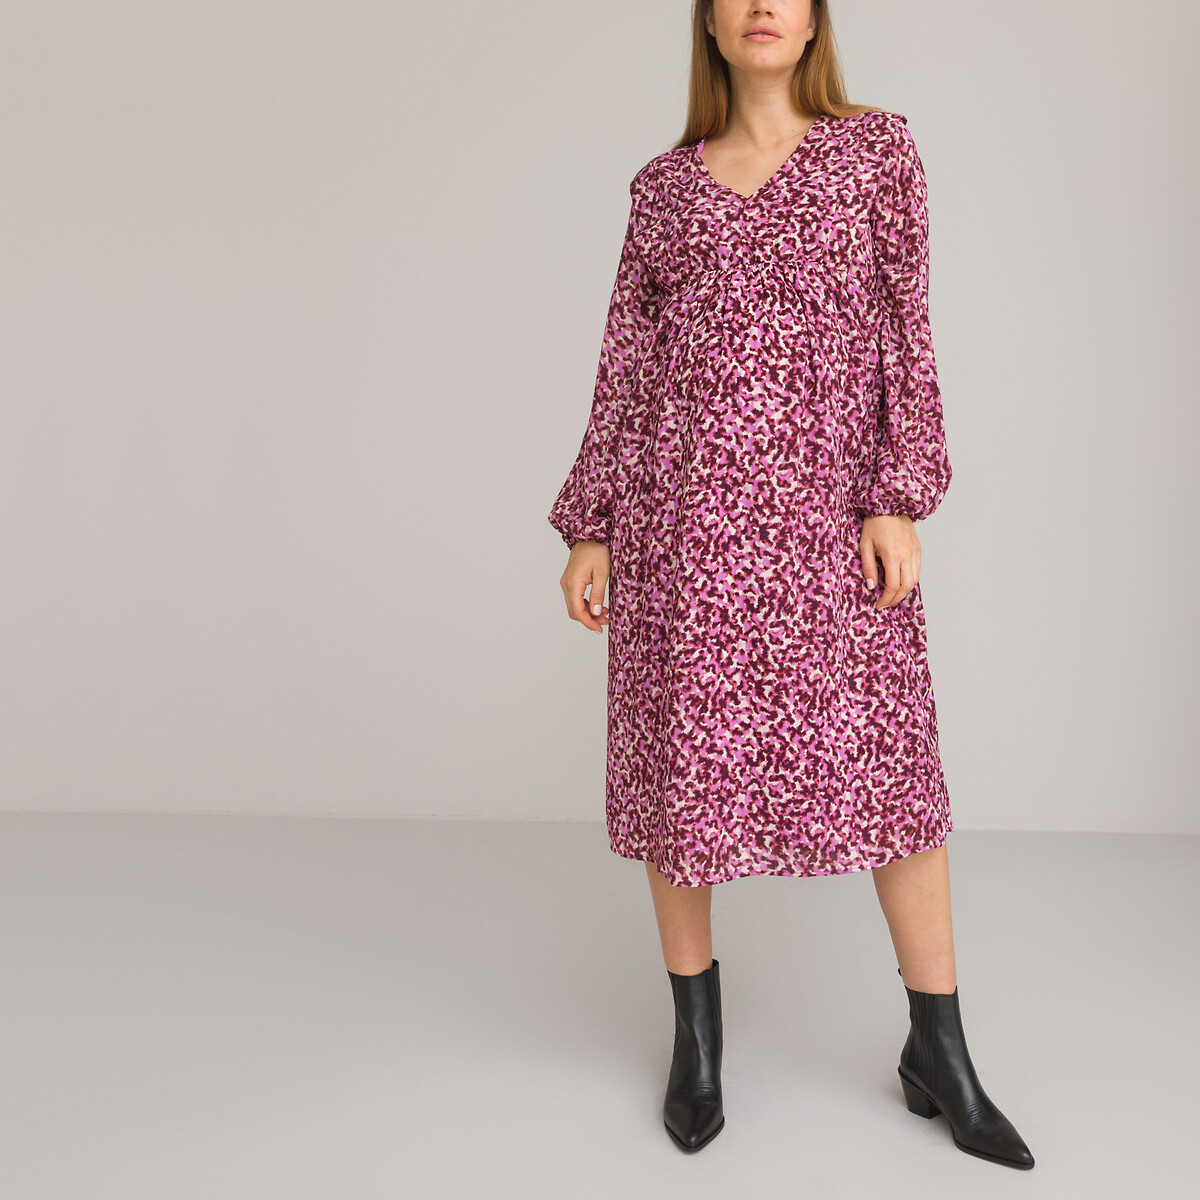 Платье Для периода беременности с V-образным вырезом длинными рукавами принтом 46 розовый LaRedoute, размер 46 - фото 1